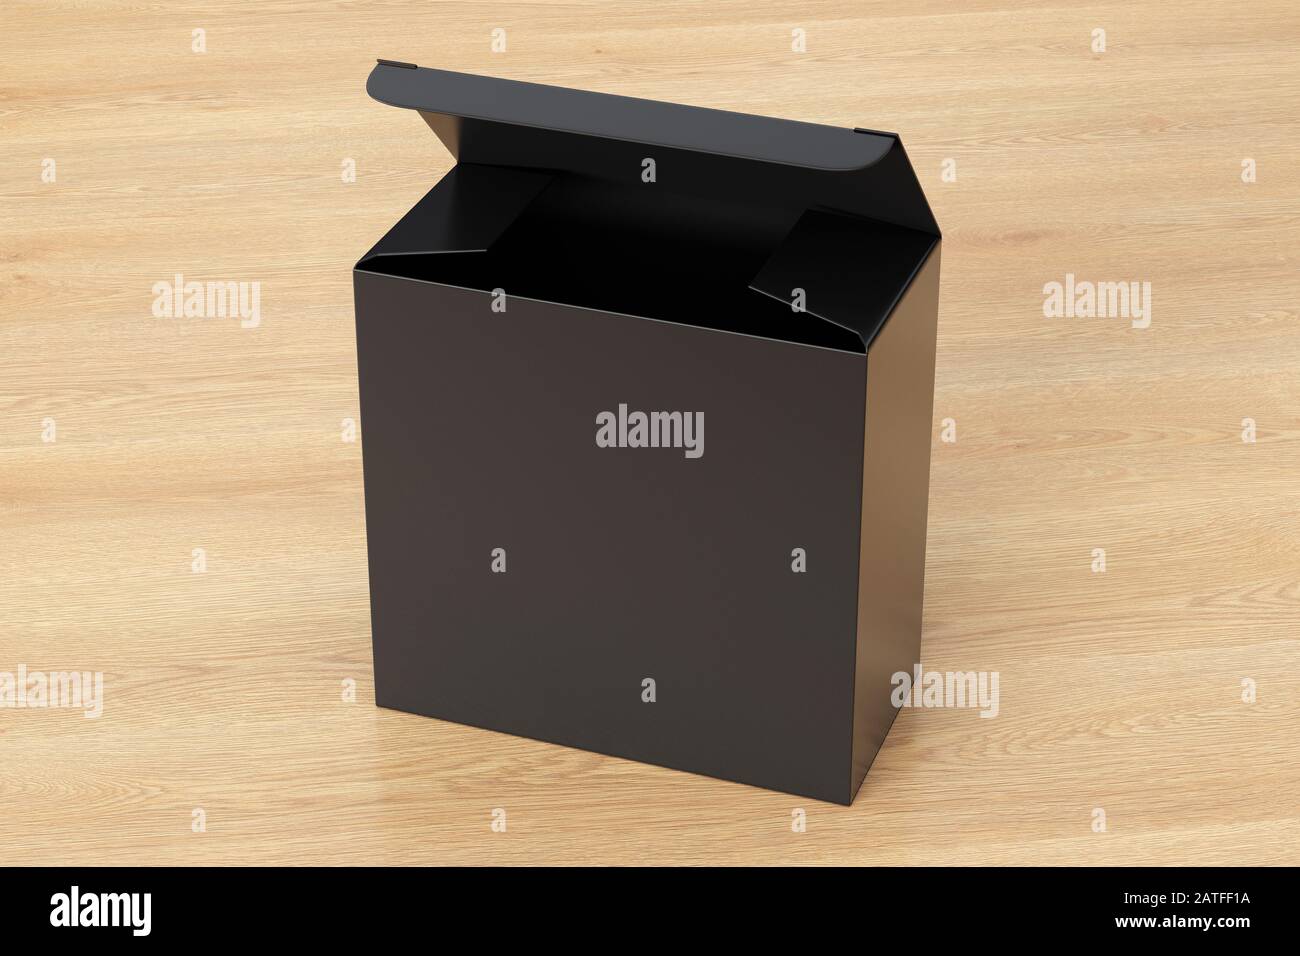 Boîte carrée large noire vierge avec couvercle à rabat ouvert sur fond en bois. Chemin de détourage autour de la maquette de boîte Banque D'Images